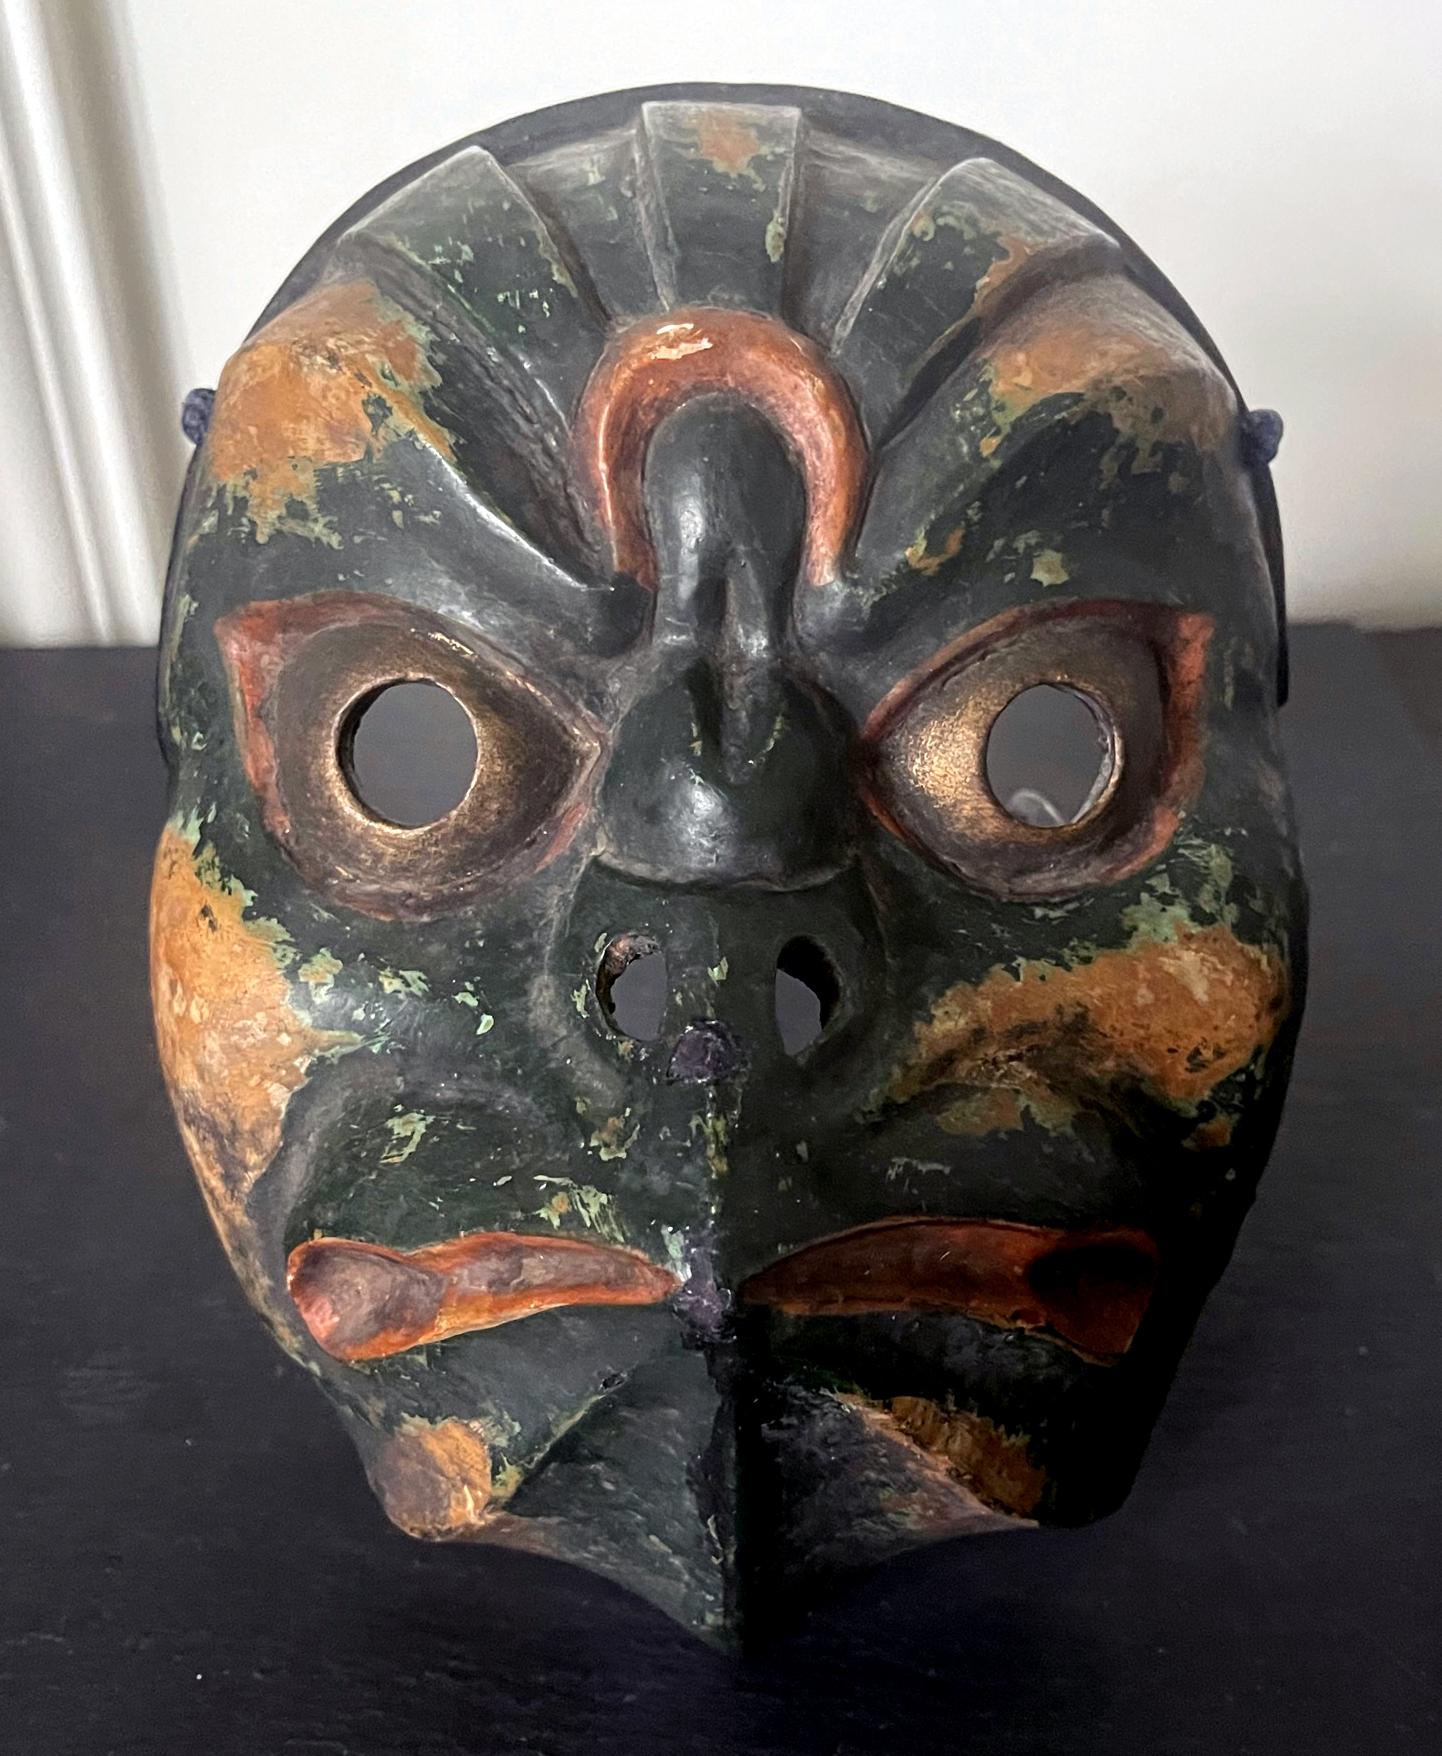 Un étonnant masque japonais en bois sculpté avec une peinture polychrome et une surface laquée. Ce masque rare est daté de la période Edo (première moitié du XIXe siècle et peut-être plus tôt). Le masque était destiné au spectacle de Bugaku (une